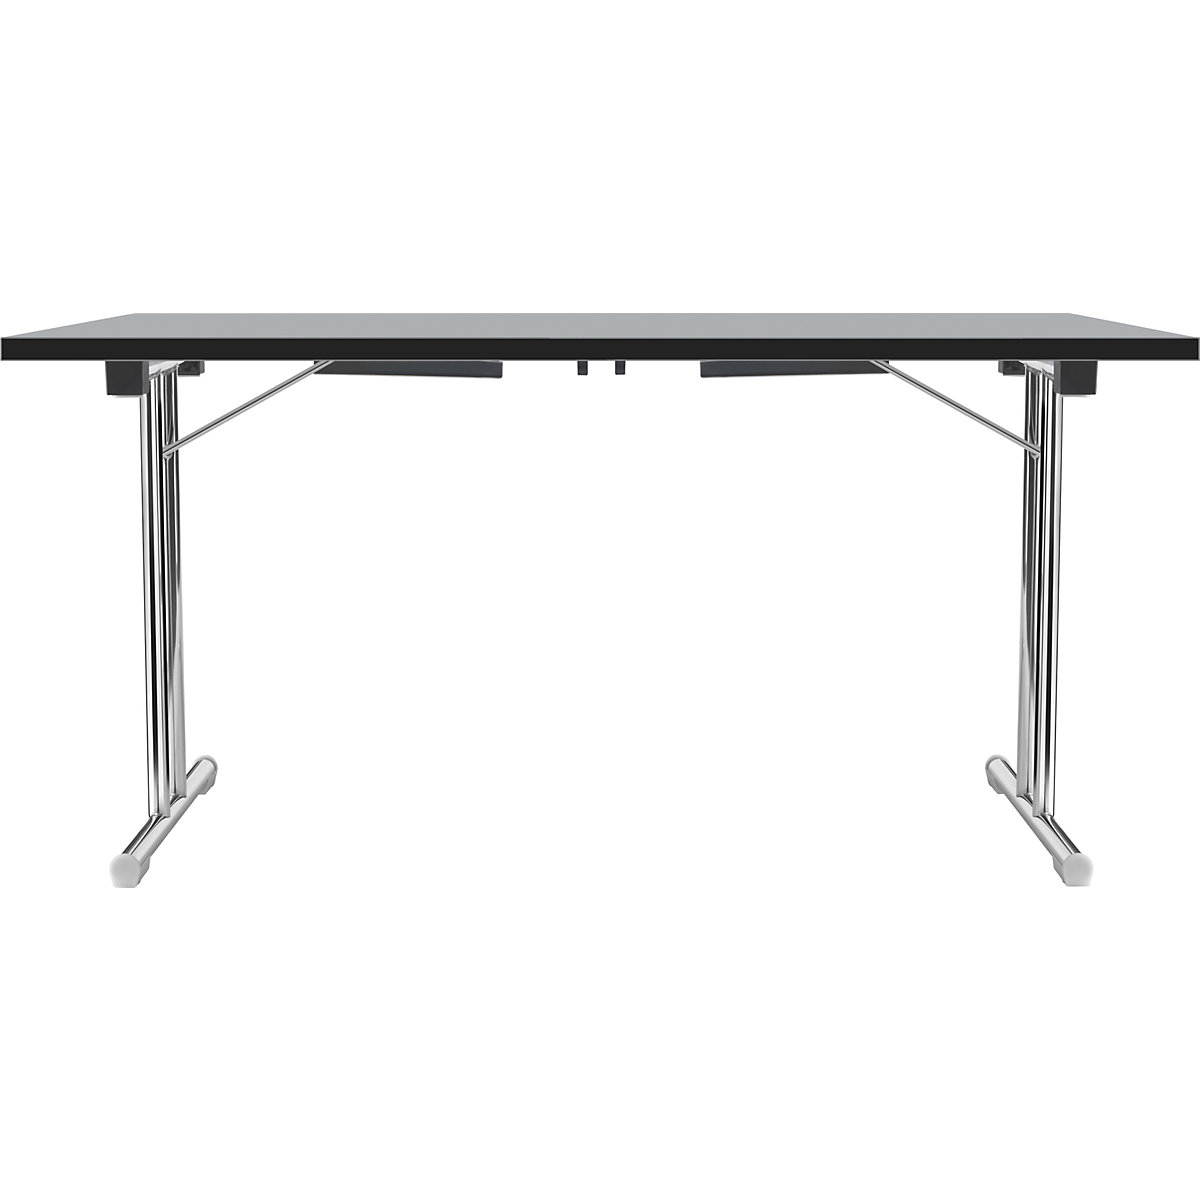 Inklapbare tafel met dubbel T-vormig onderstel, frame van staalbuis, verchroomd, lichtgrijs/zwart, b x d = 1200 x 600 mm-11